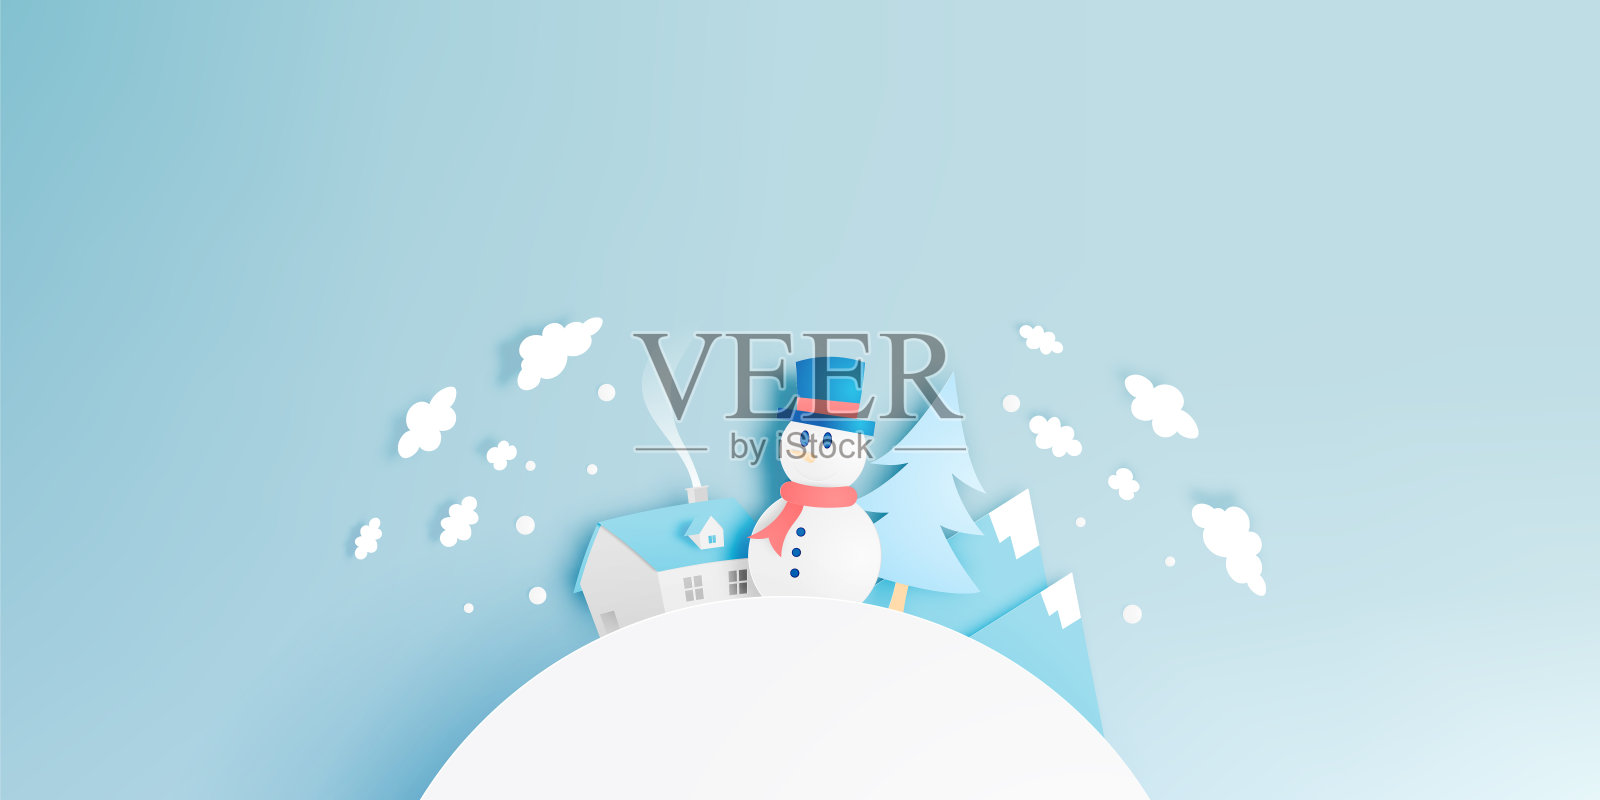 雪人和冬季景观与纸艺术风格和粉彩配色方案设计元素图片